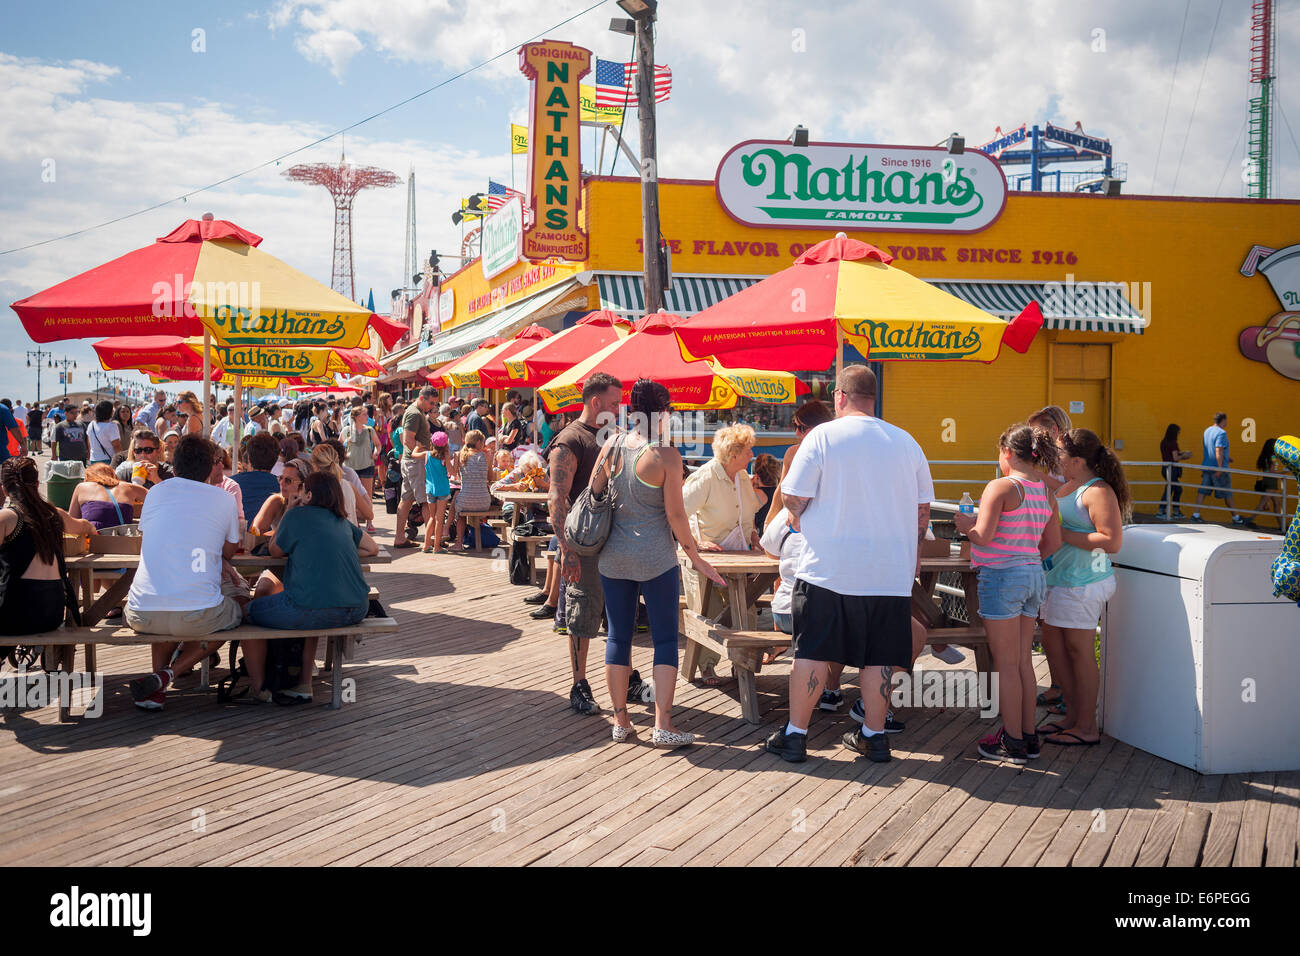 Les visiteurs à Coney Island à New York le dimanche, Août 24, 2014 s'arrêter à la direction de Nathan célèbre restaurant sur la promenade. Banque D'Images